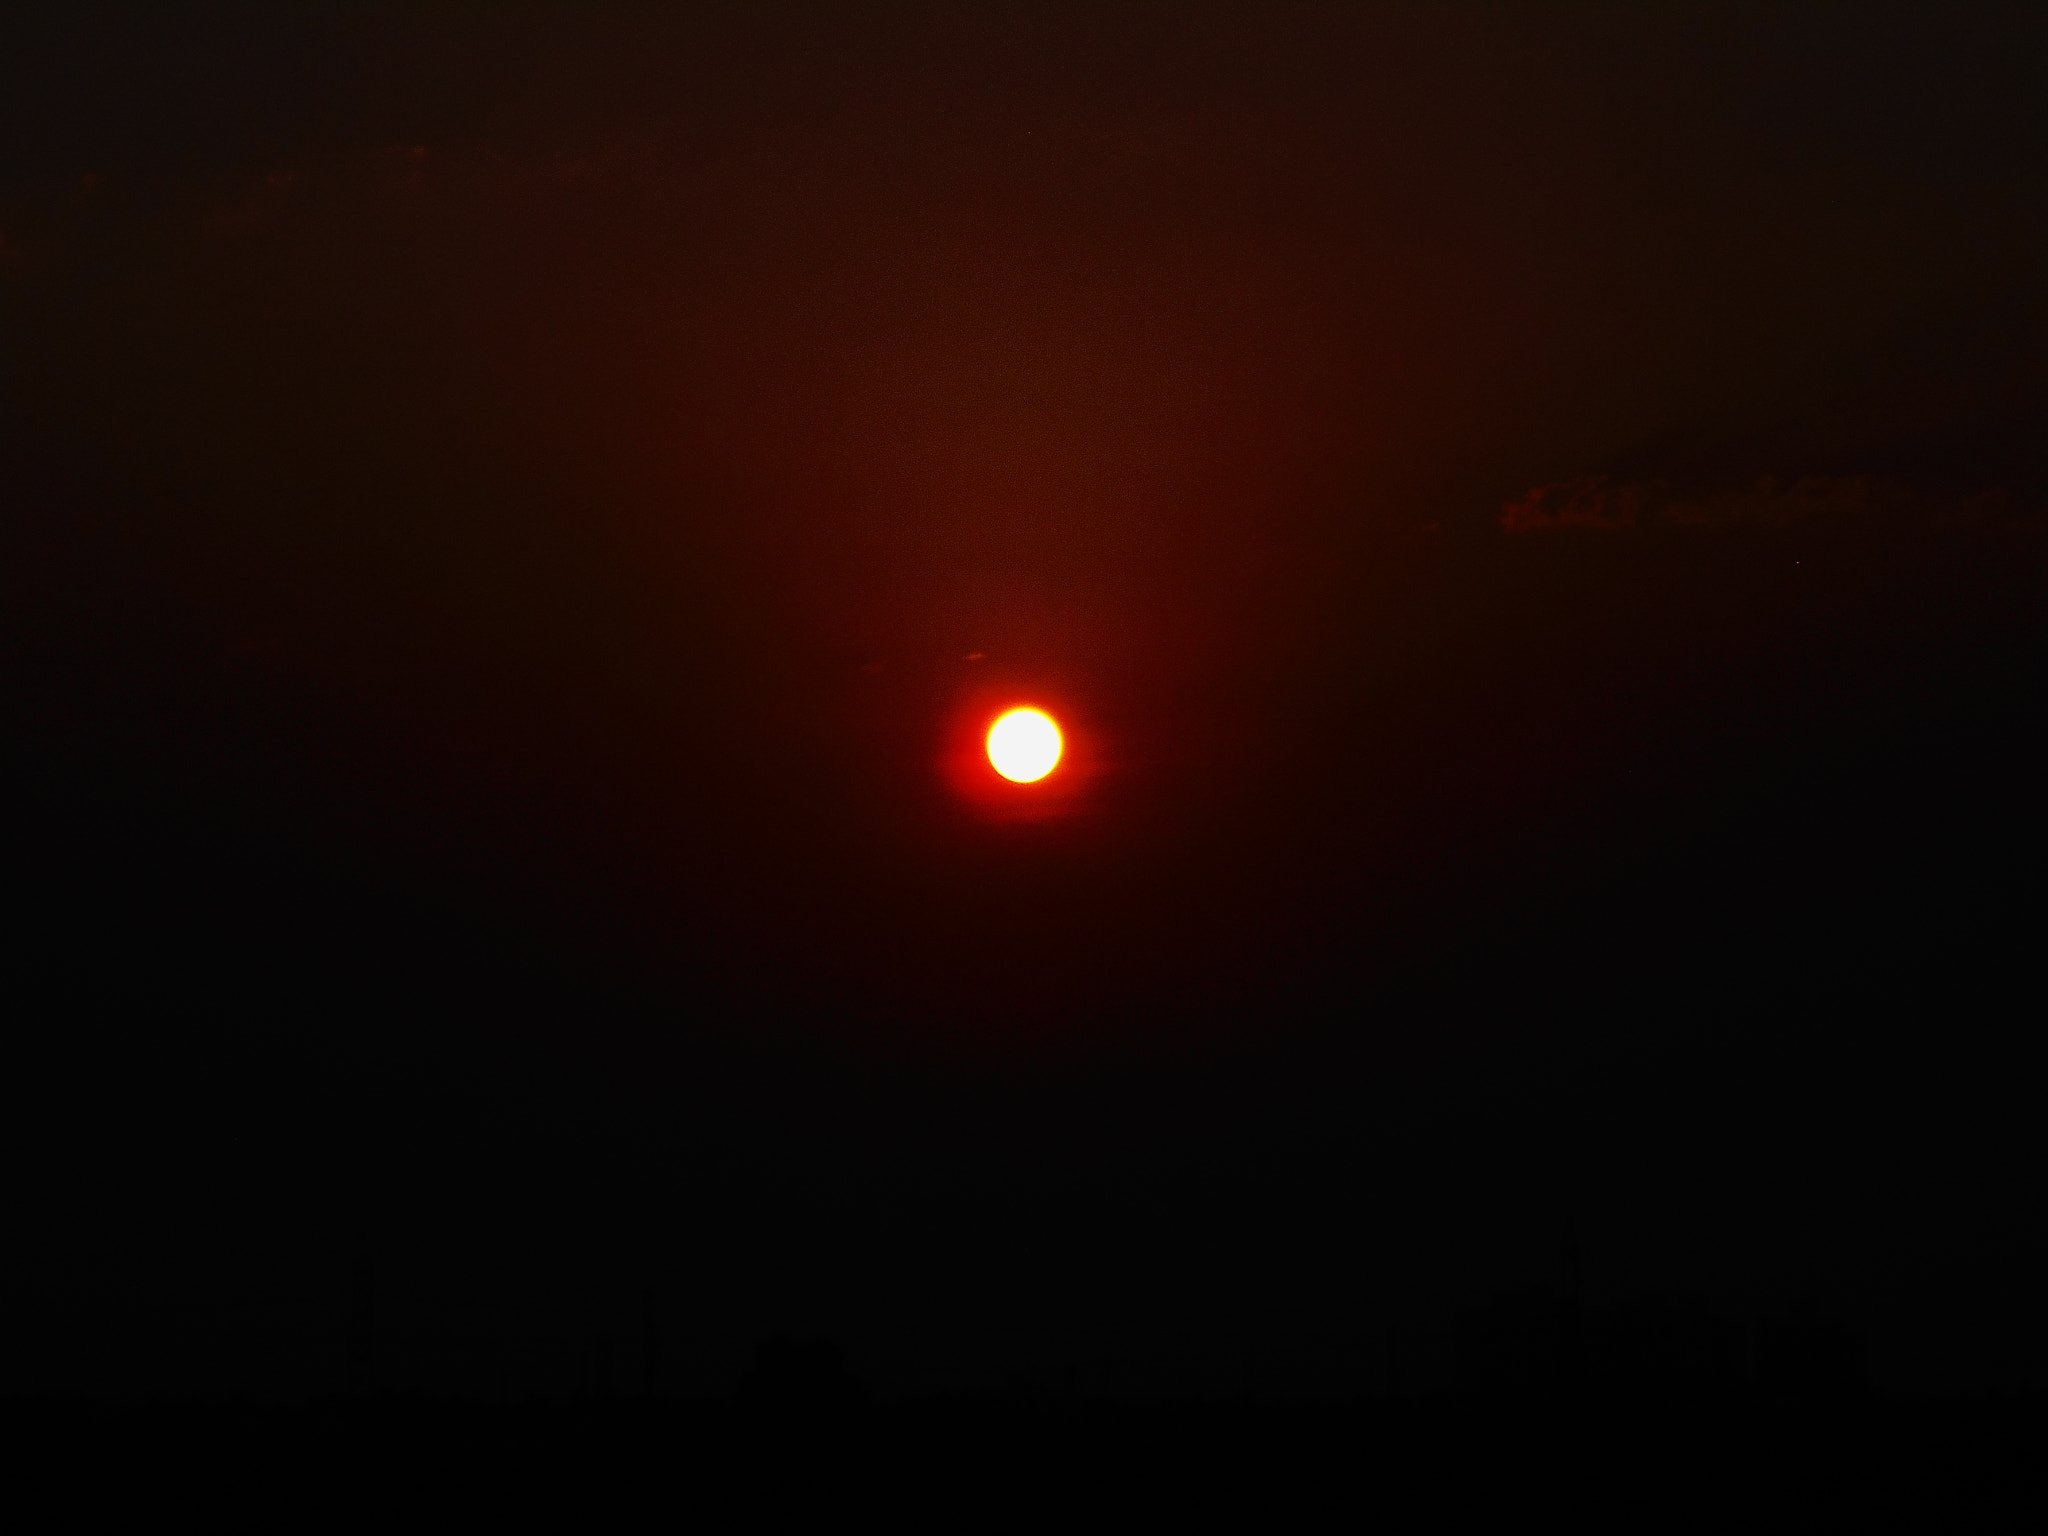 Nikon COOLPIX S2800 sample photo. Sunset photography